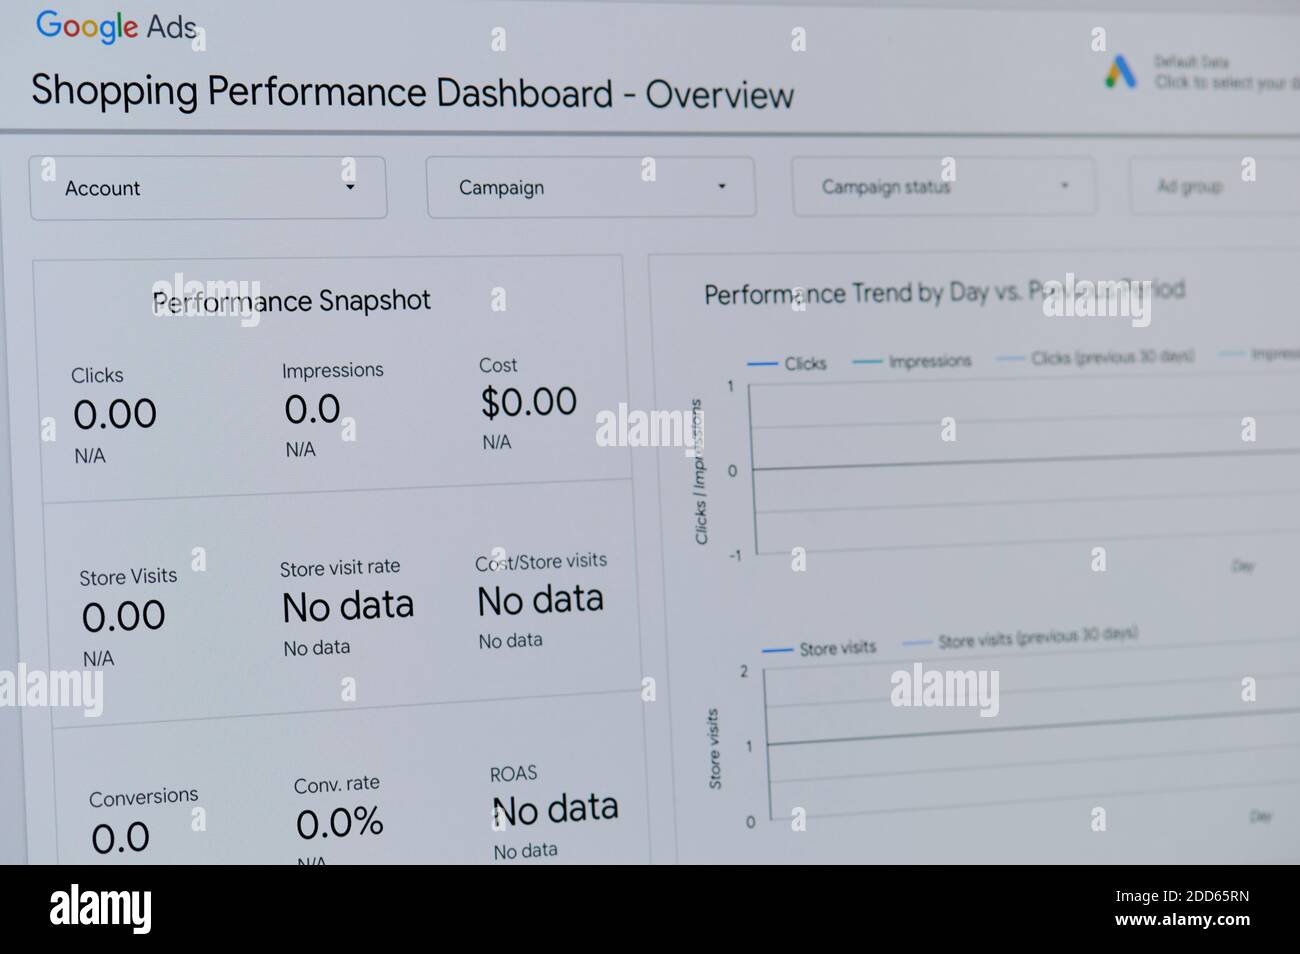 Nueva york, EE.UU. - 24 de noviembre de 2020: Google ads shopping performance panel en la pantalla del portátil Foto de stock